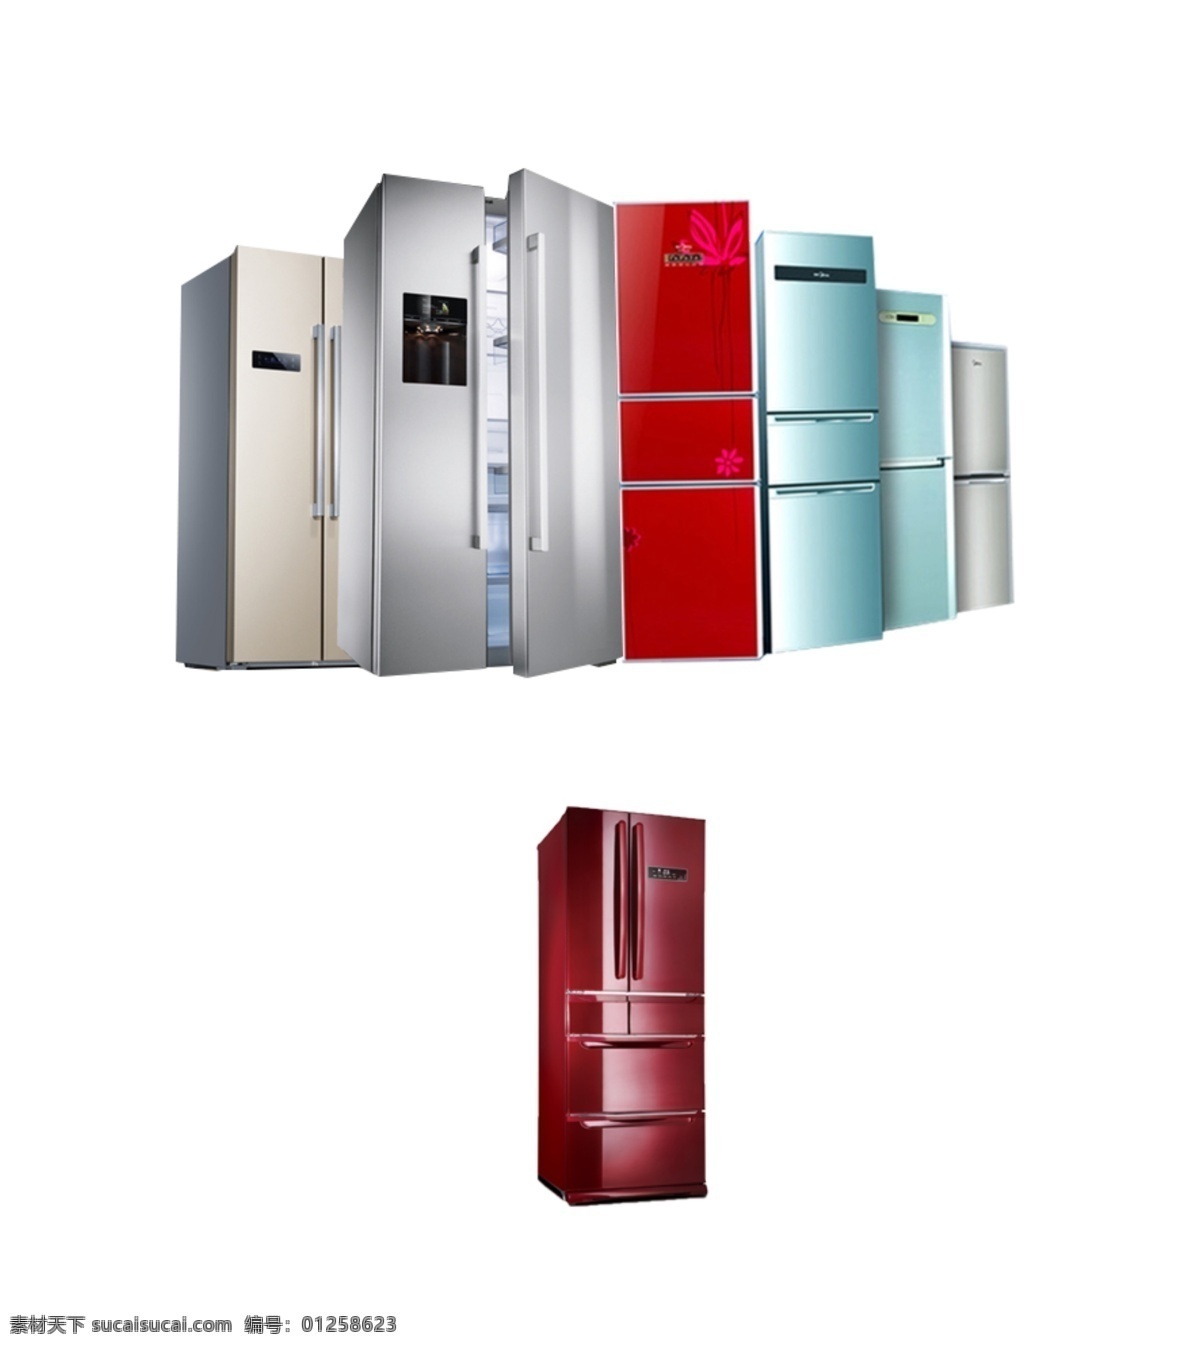 各种冰箱图片 电器 冰箱 种种冰箱 红色冰箱 电器宣传